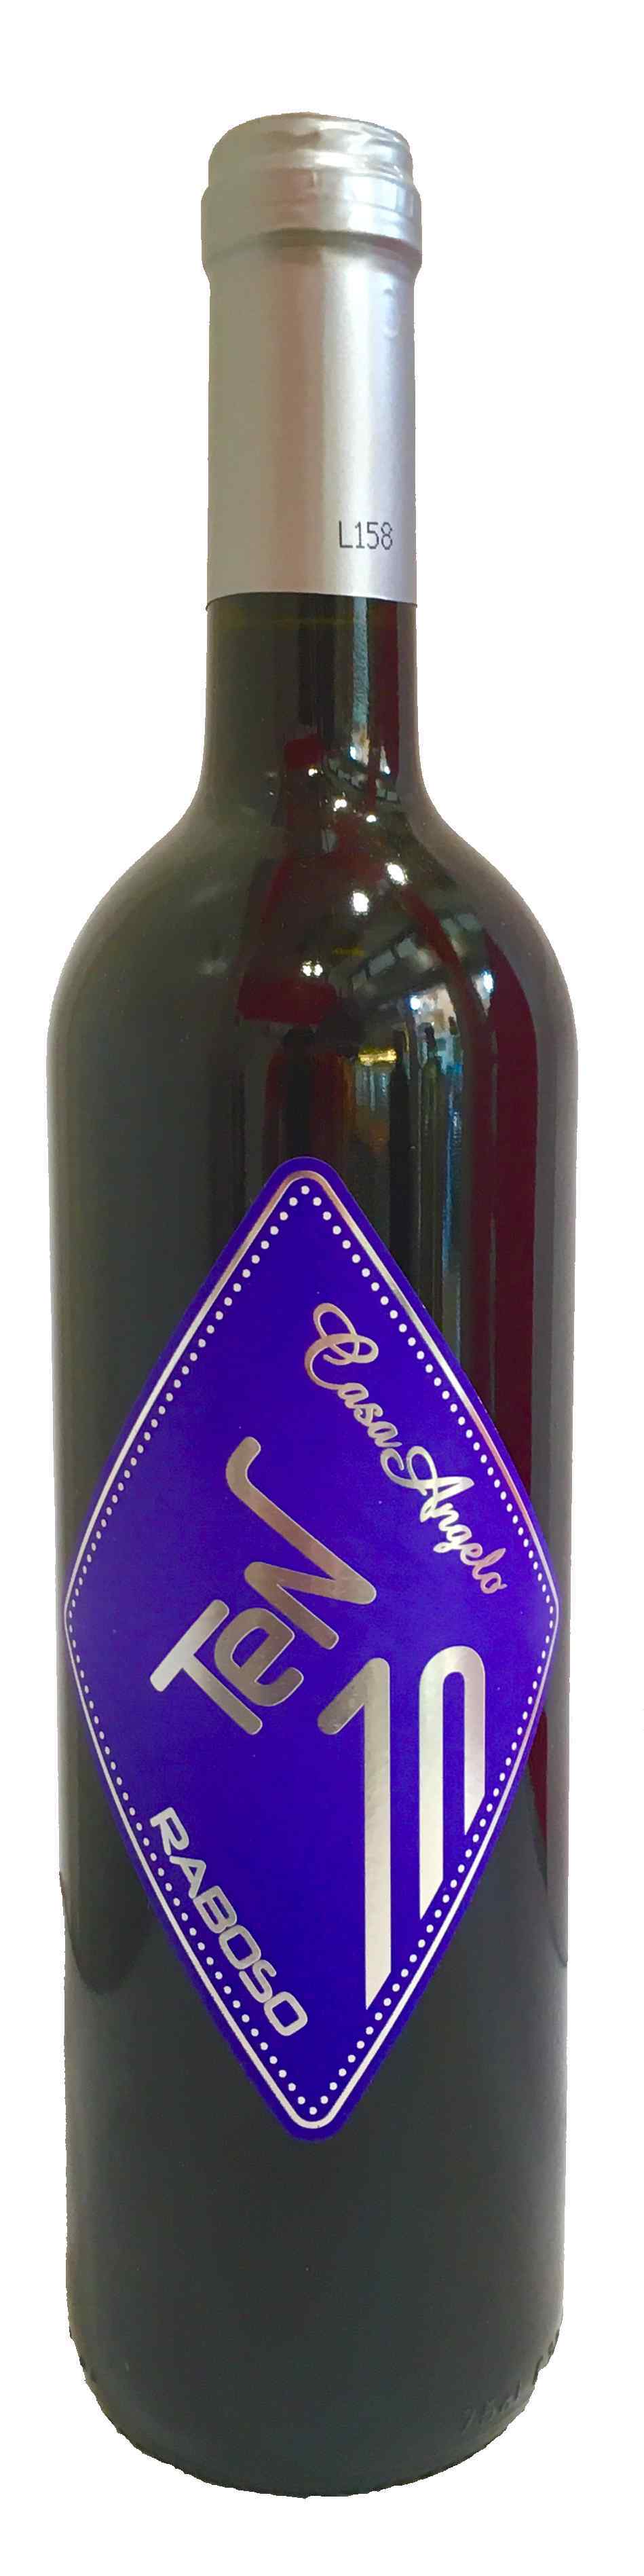 colore: vinaccia di vino bordeaux scuro mussola di carta velina per regali o creazioni 1 confezione da 480 fogli di seta 50 x 75 cm 